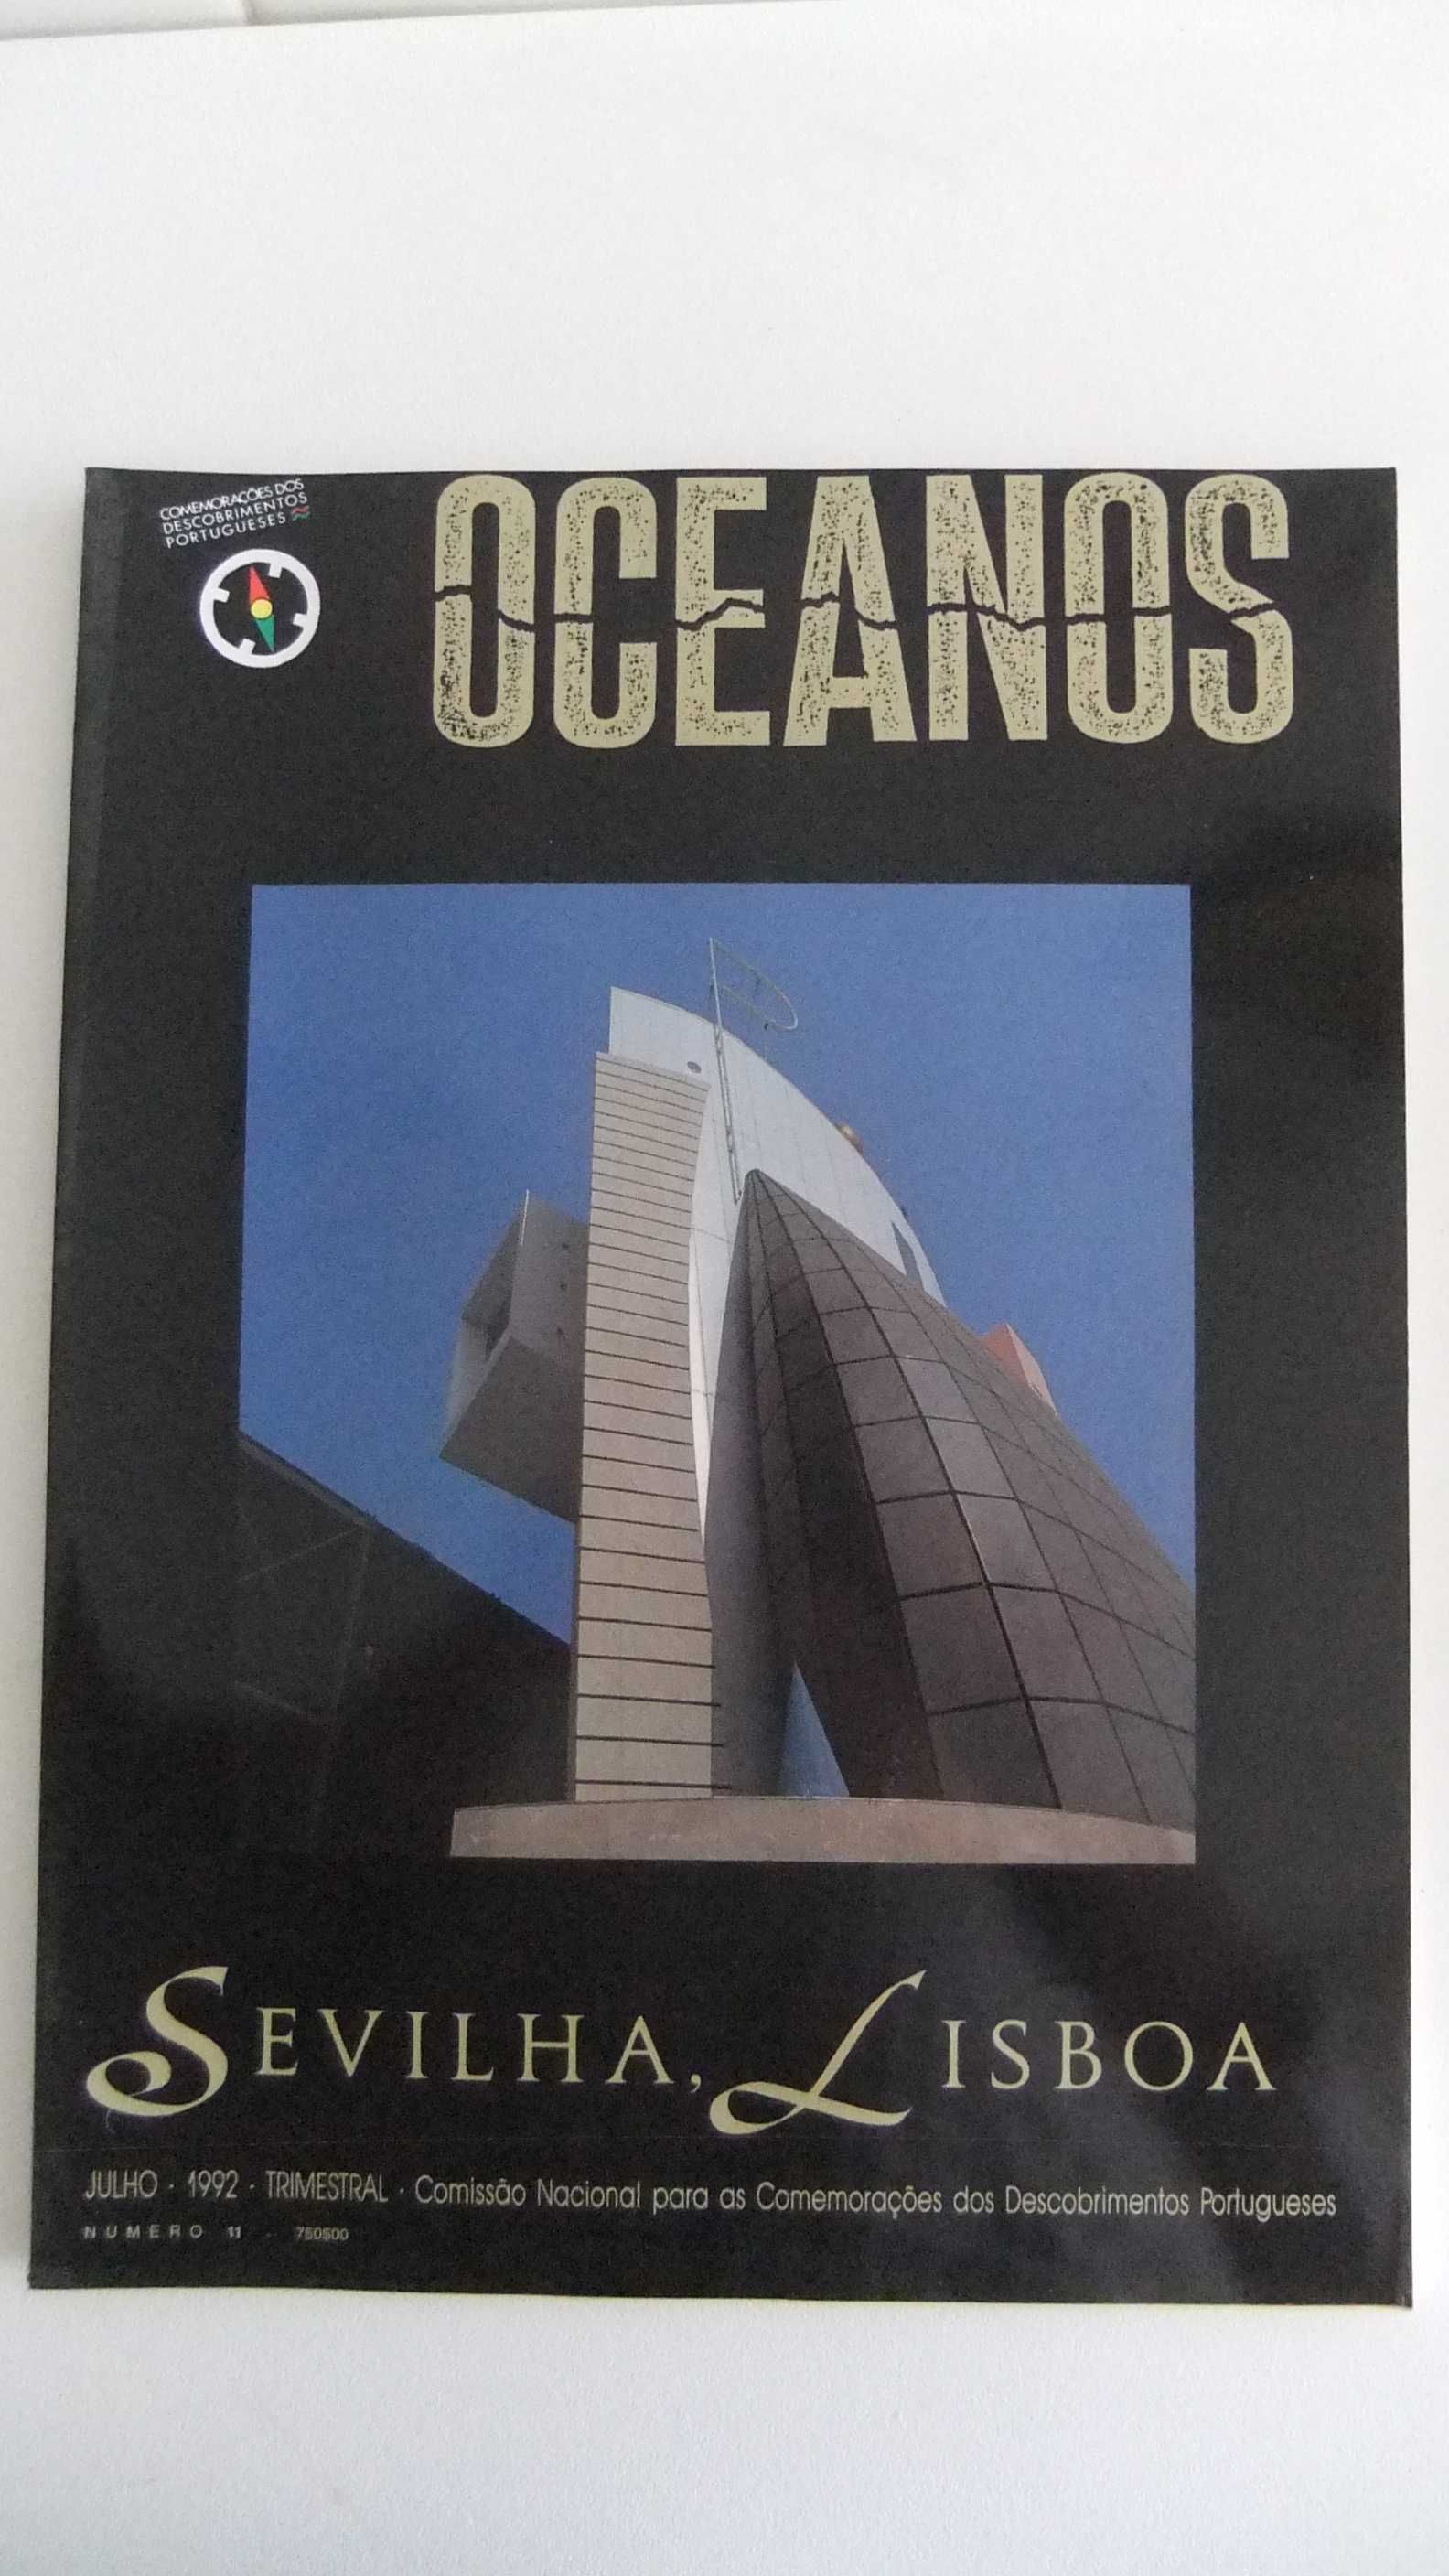 14 Revistas OCEANOS (nº 2 a 15) - Em estado NOVAS  (lote nº 2 a nº 8)